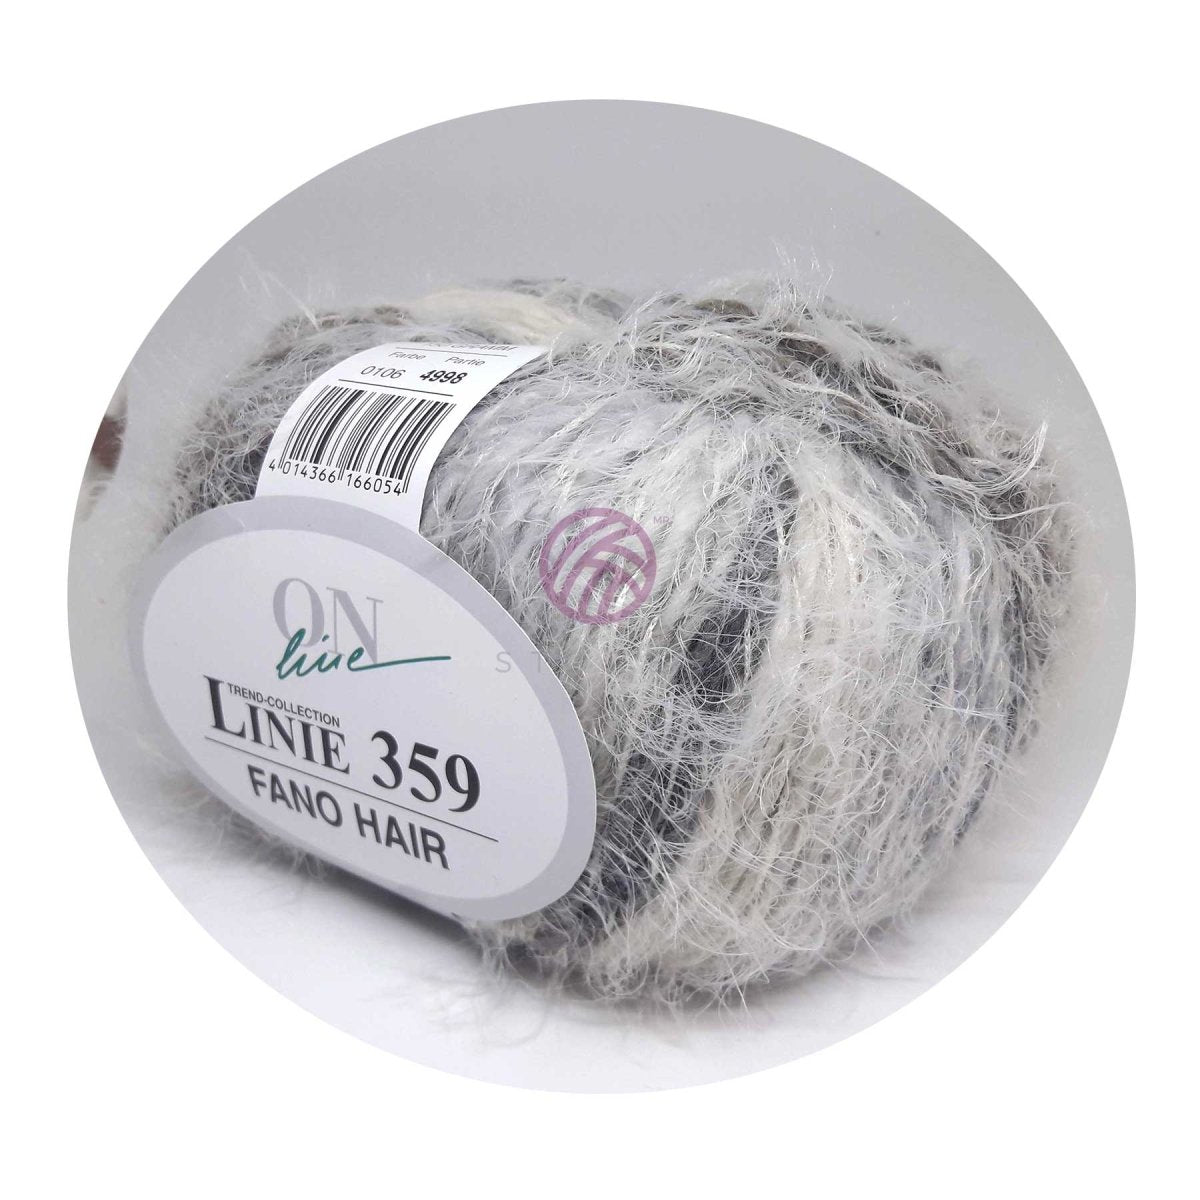 FANO HAIR - Crochetstores110359-1064014366166054